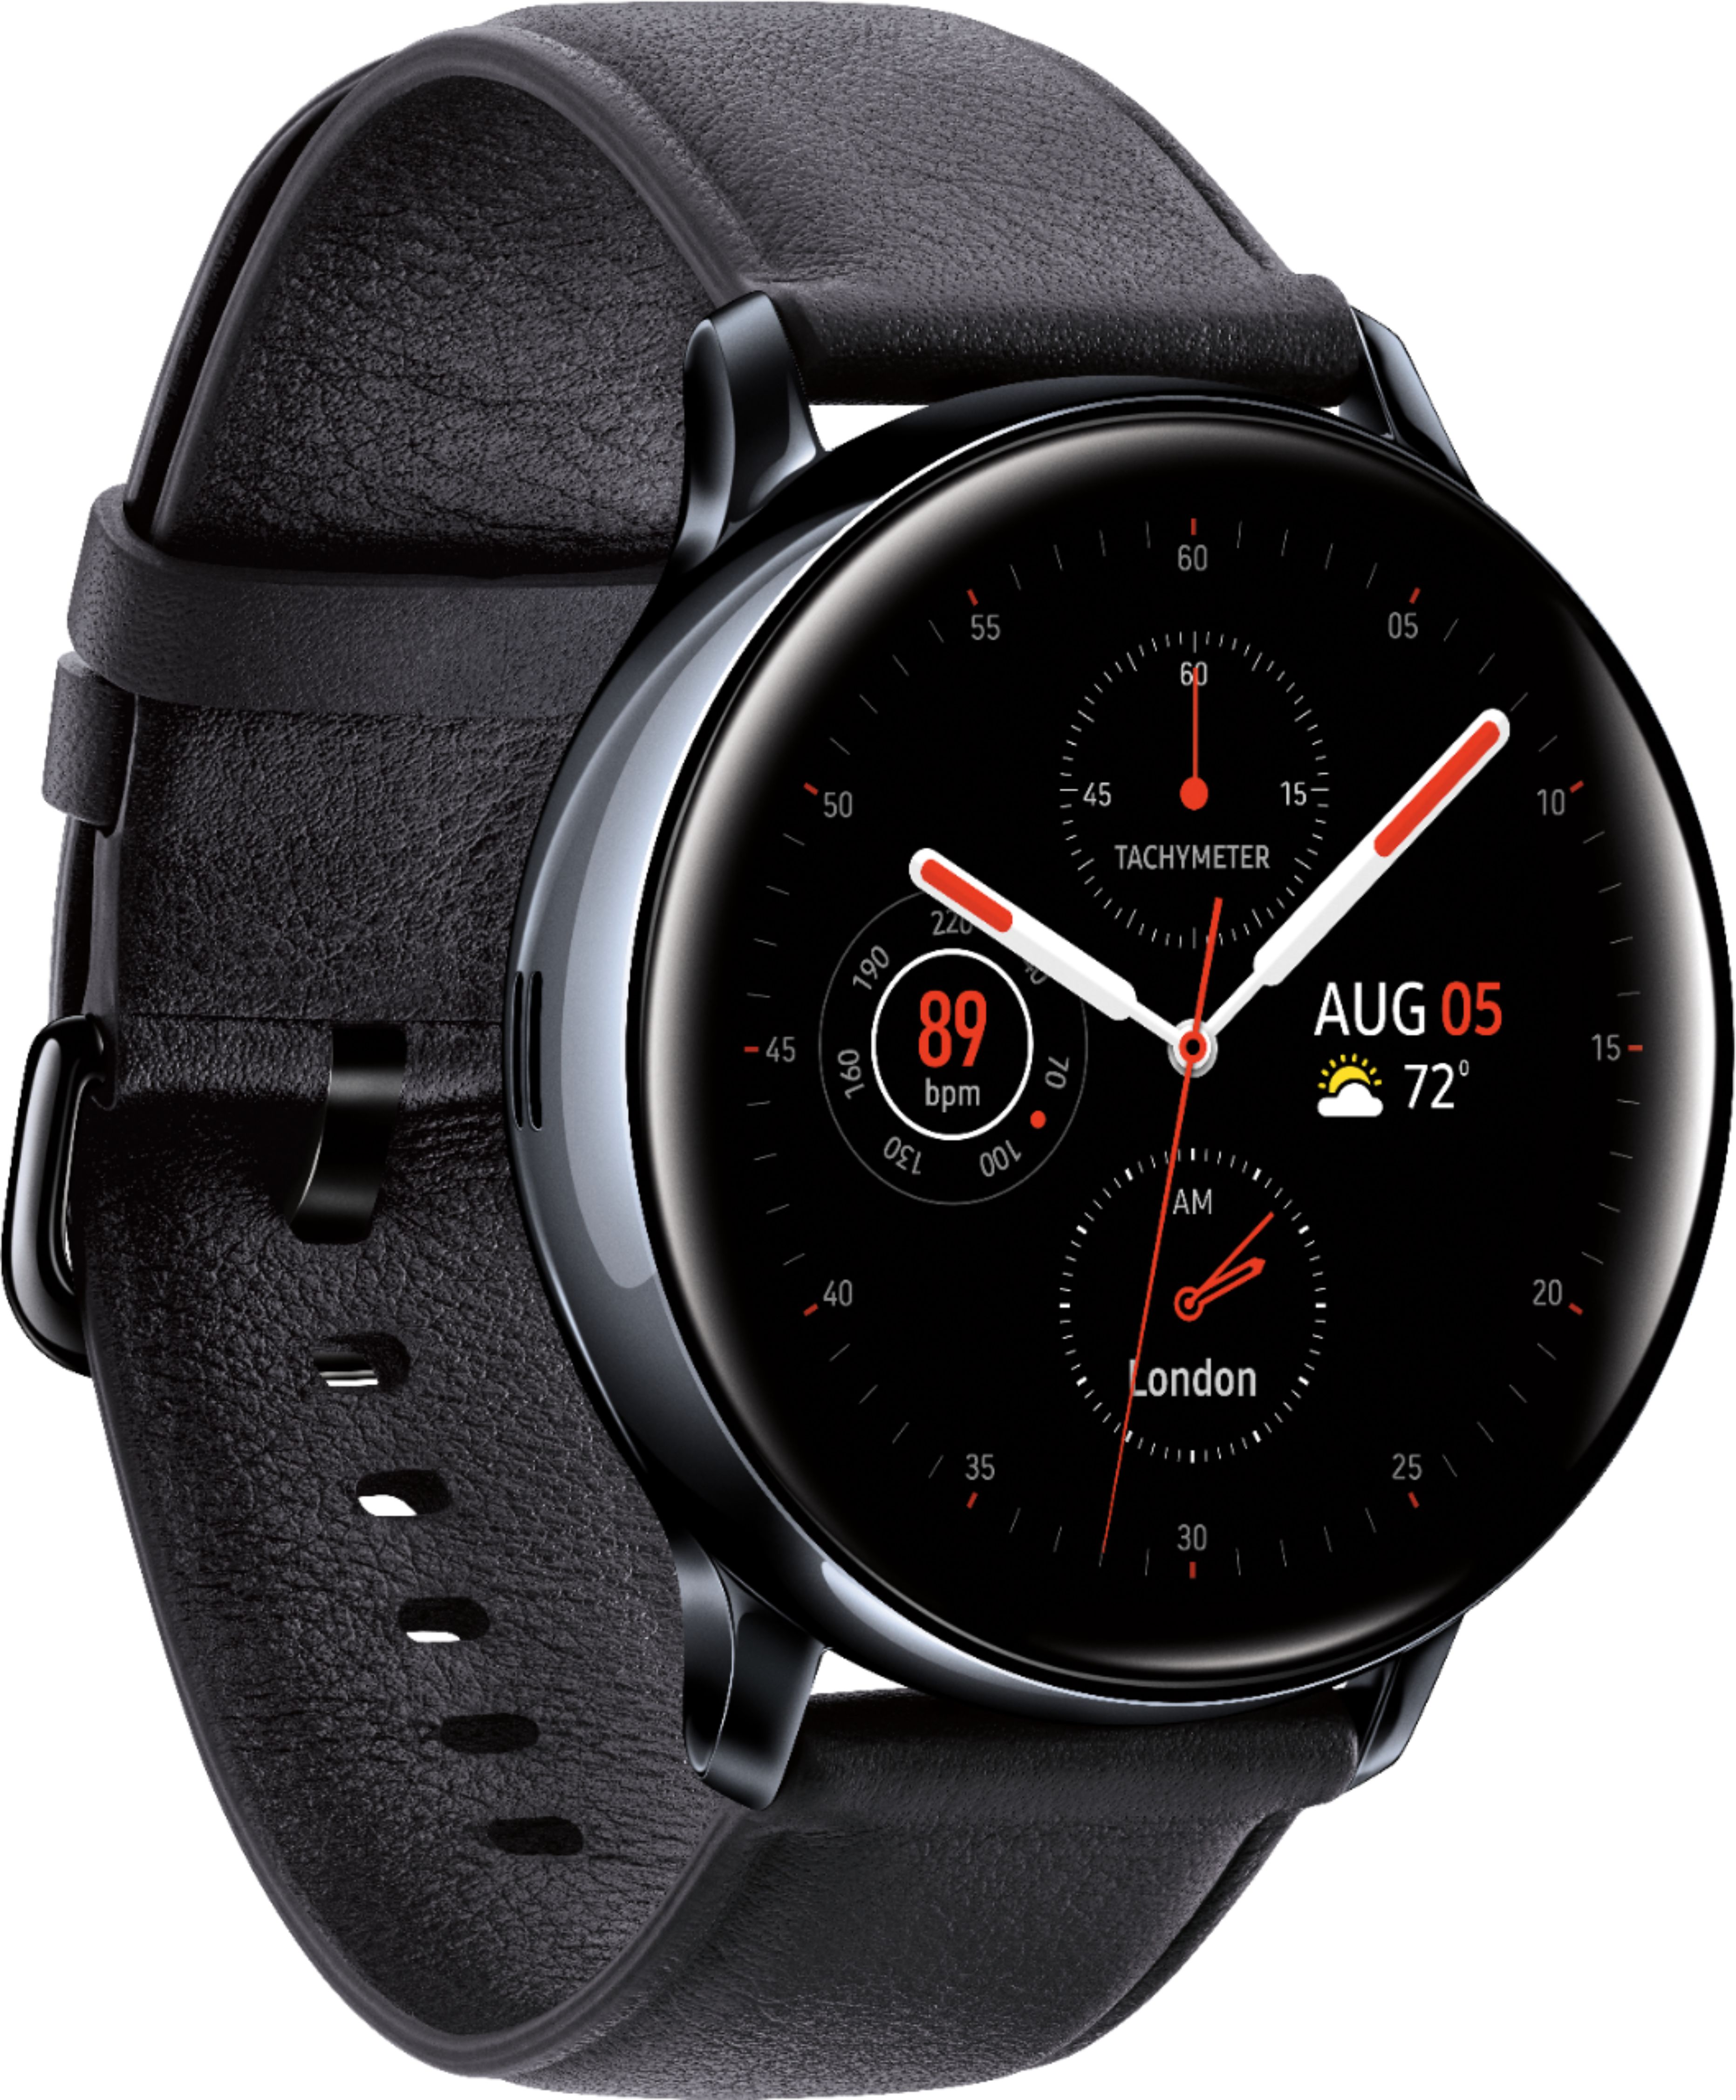 Samsung Galaxy Watch Active2 Smartwatch 40mm Stainless Steel LTE (Unlocked) Black SM-R835USKAXAR 